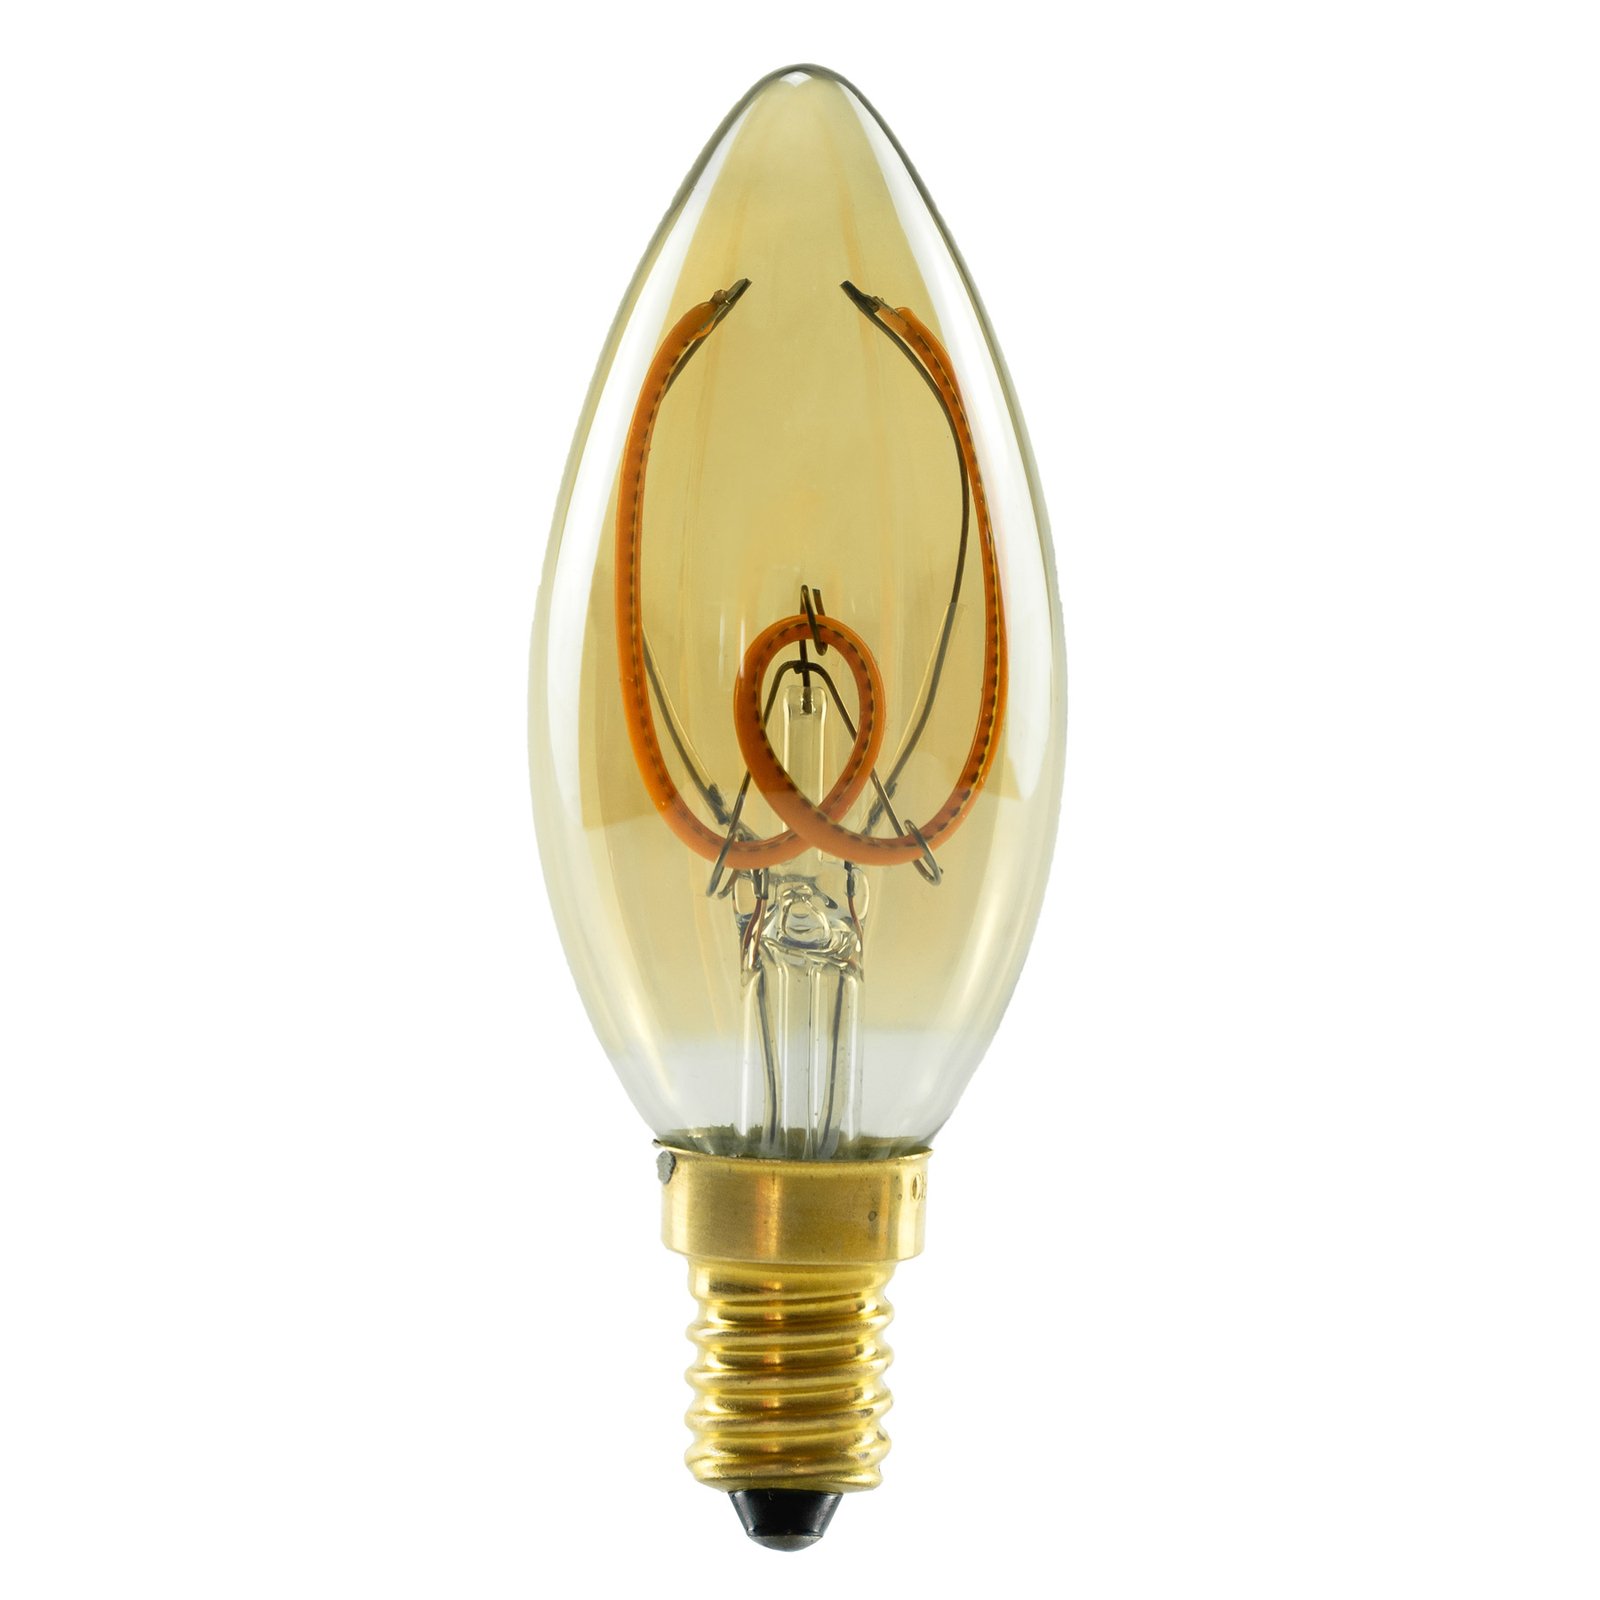 SEGULA LED gyertya E14 3.2W 1,900K fényerősségű, arany színű dimmelhető